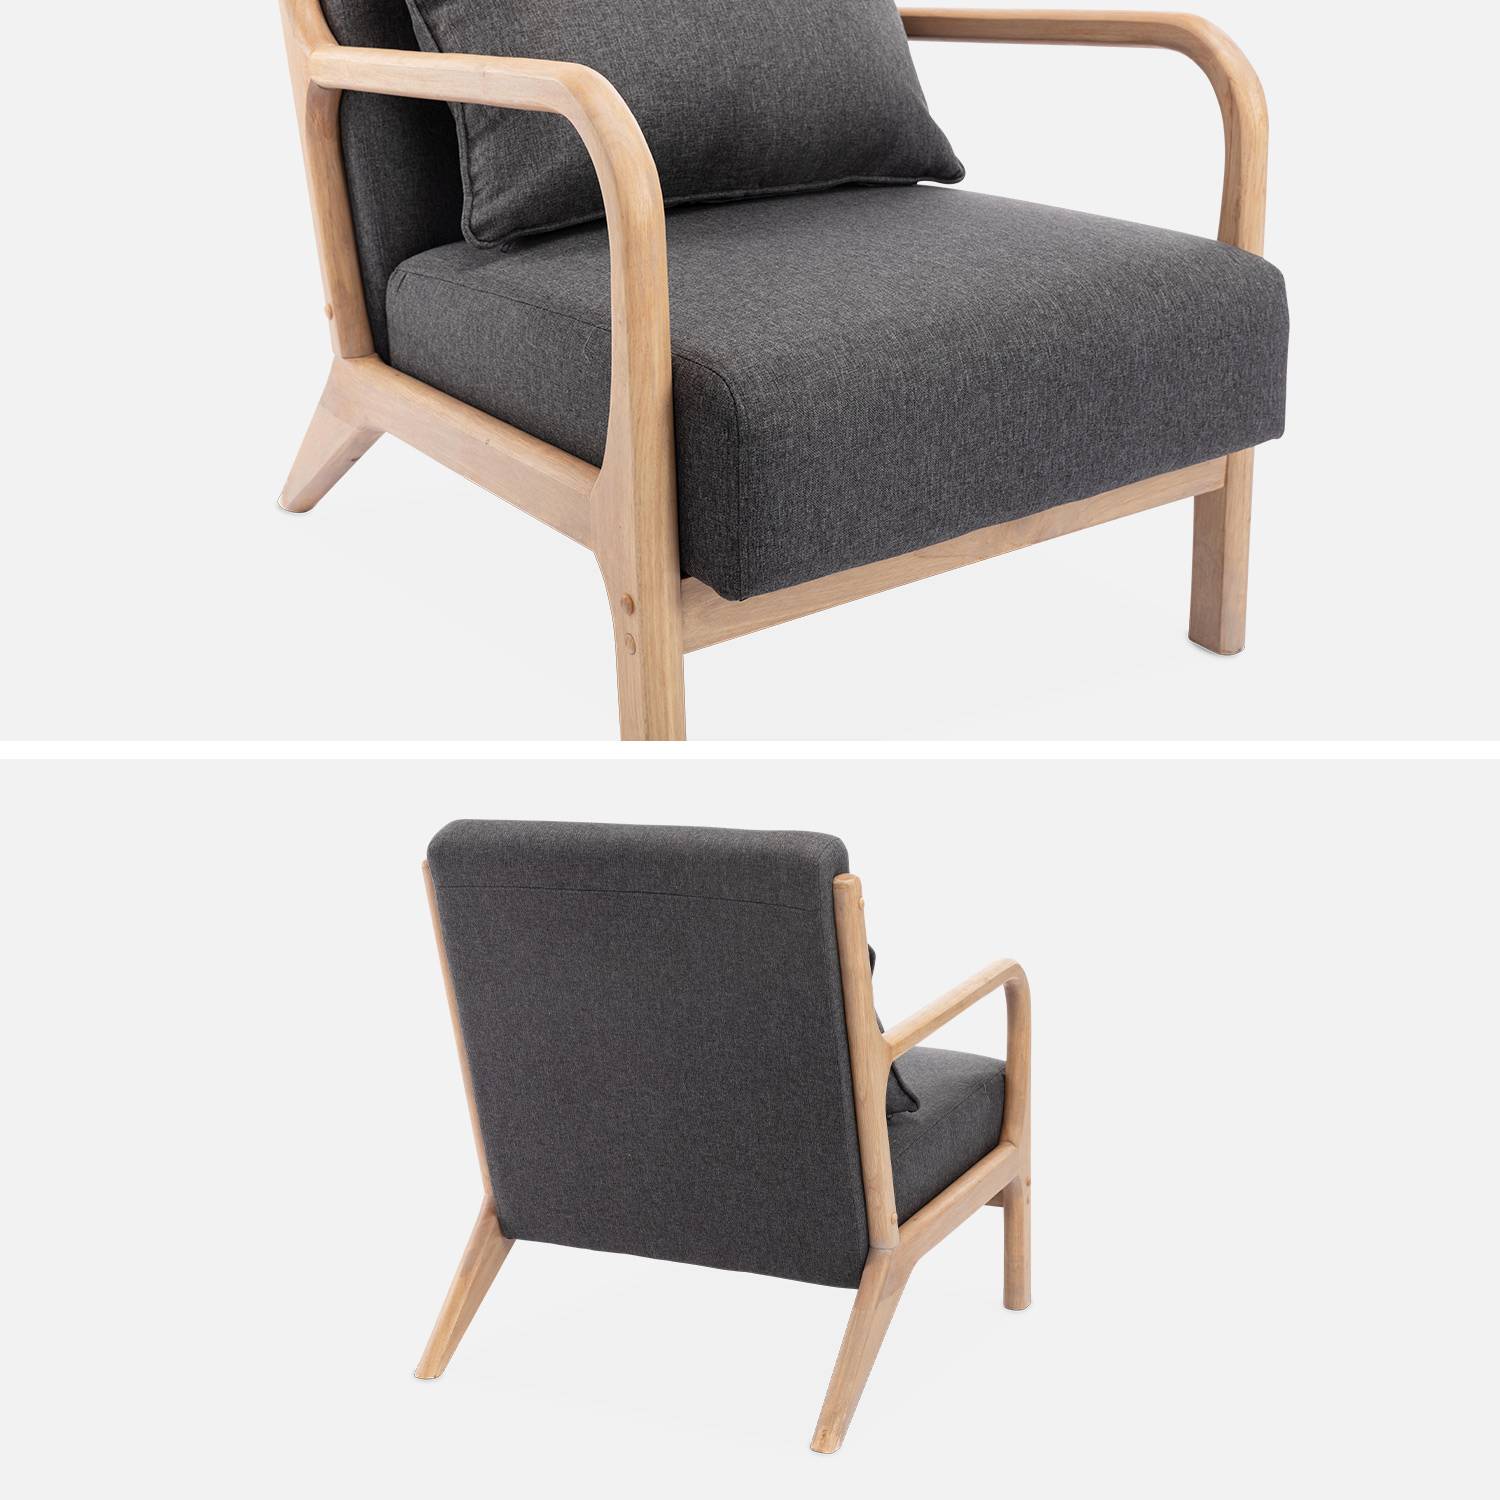 Fauteuil design en bois et tissu, 1 place droit fixe, pieds compas scandinave, structure en bois solide, assise confortable, gris foncé Photo6